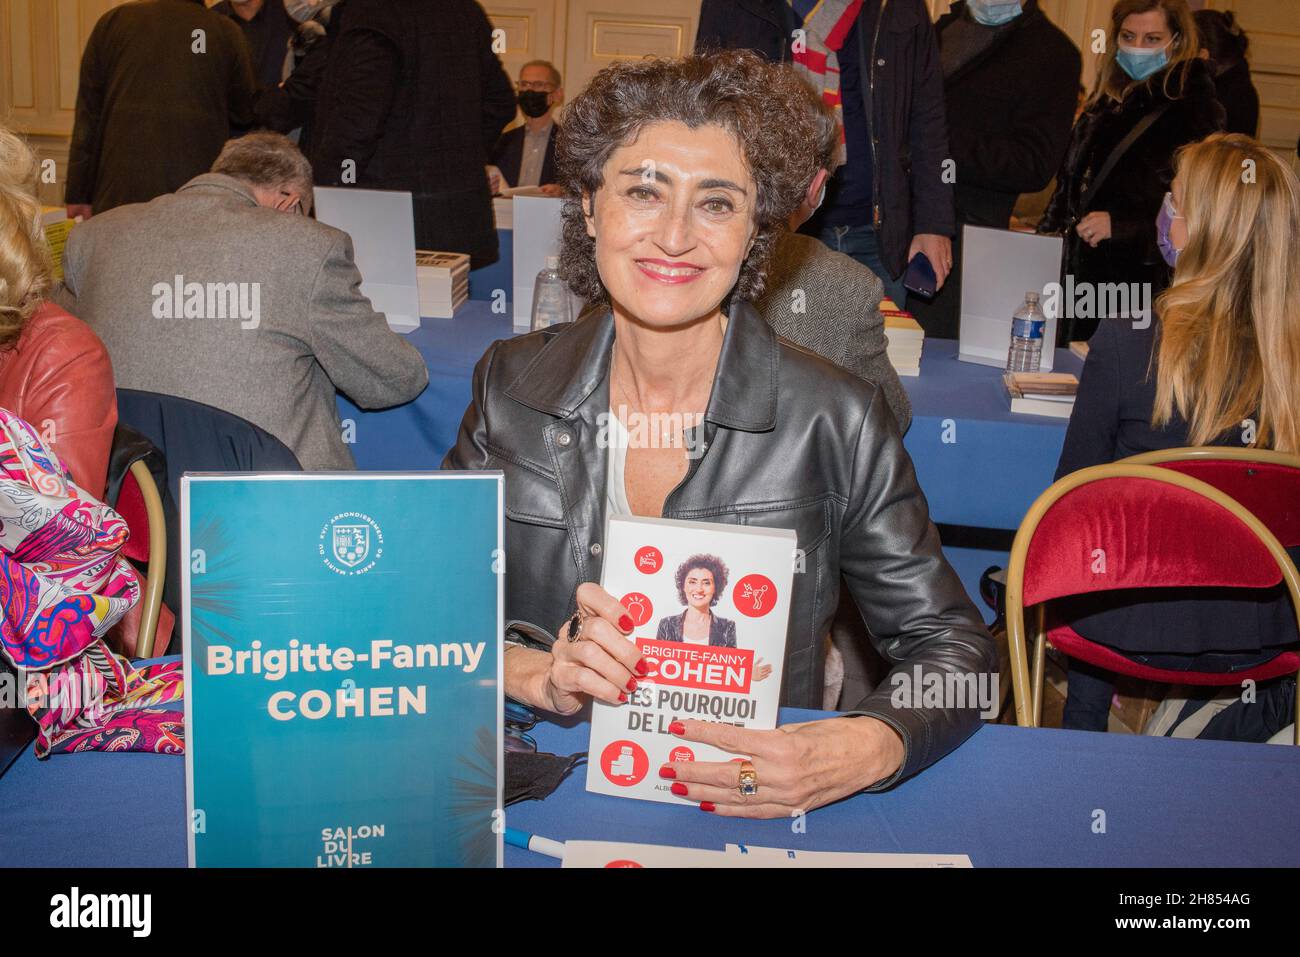 Paris : Rencontre avec la journaliste Brigitte Fanny Cohen lors d'une séance dédicace de ses deux derniers livres au Salon du livre de la Mairie 75016. Stock Photo